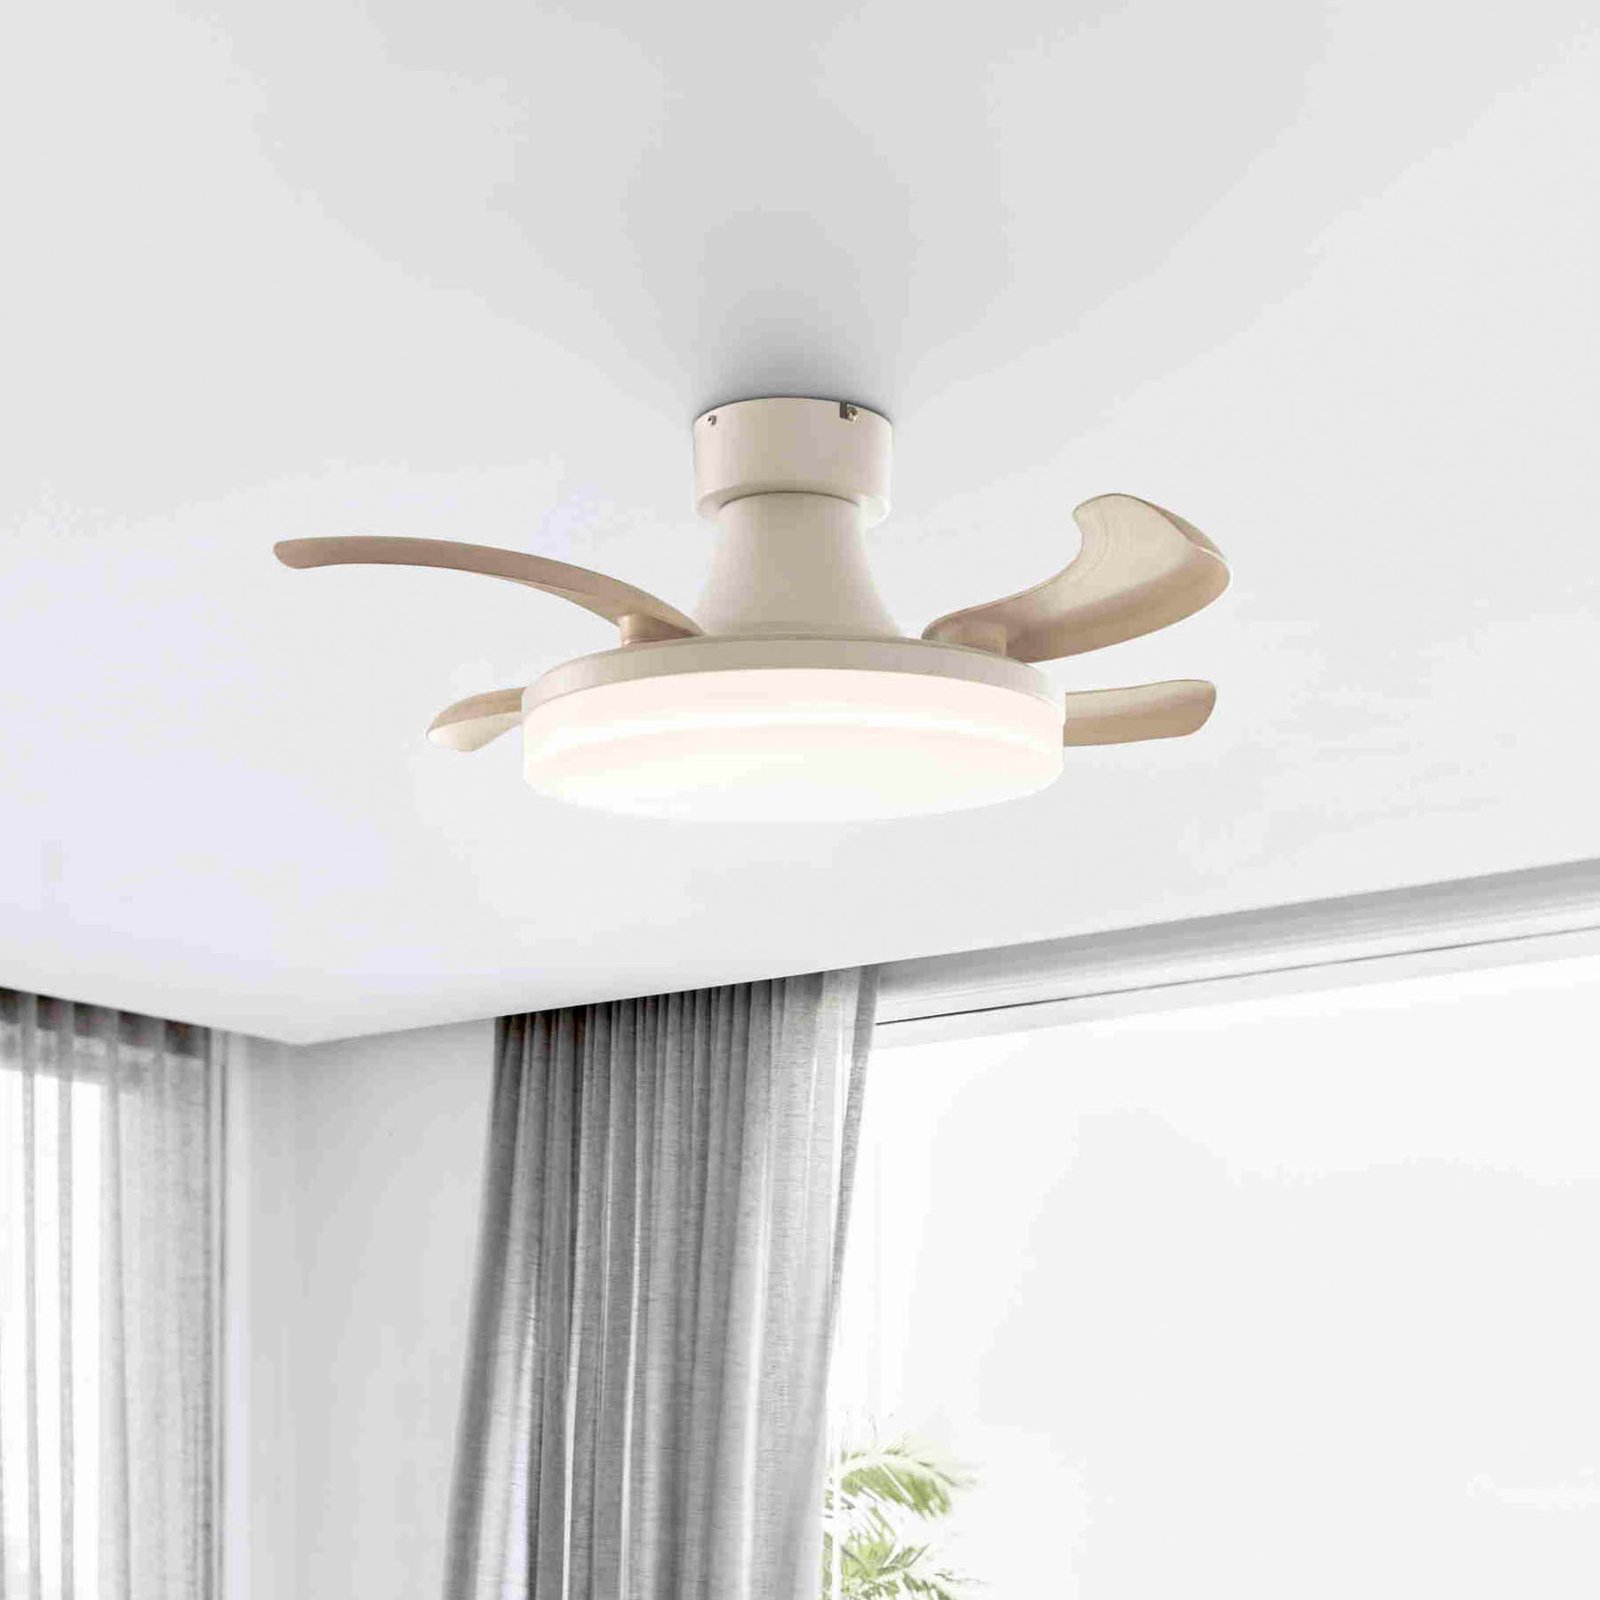 Fanaway Orbit ceiling fan LED bulb, white